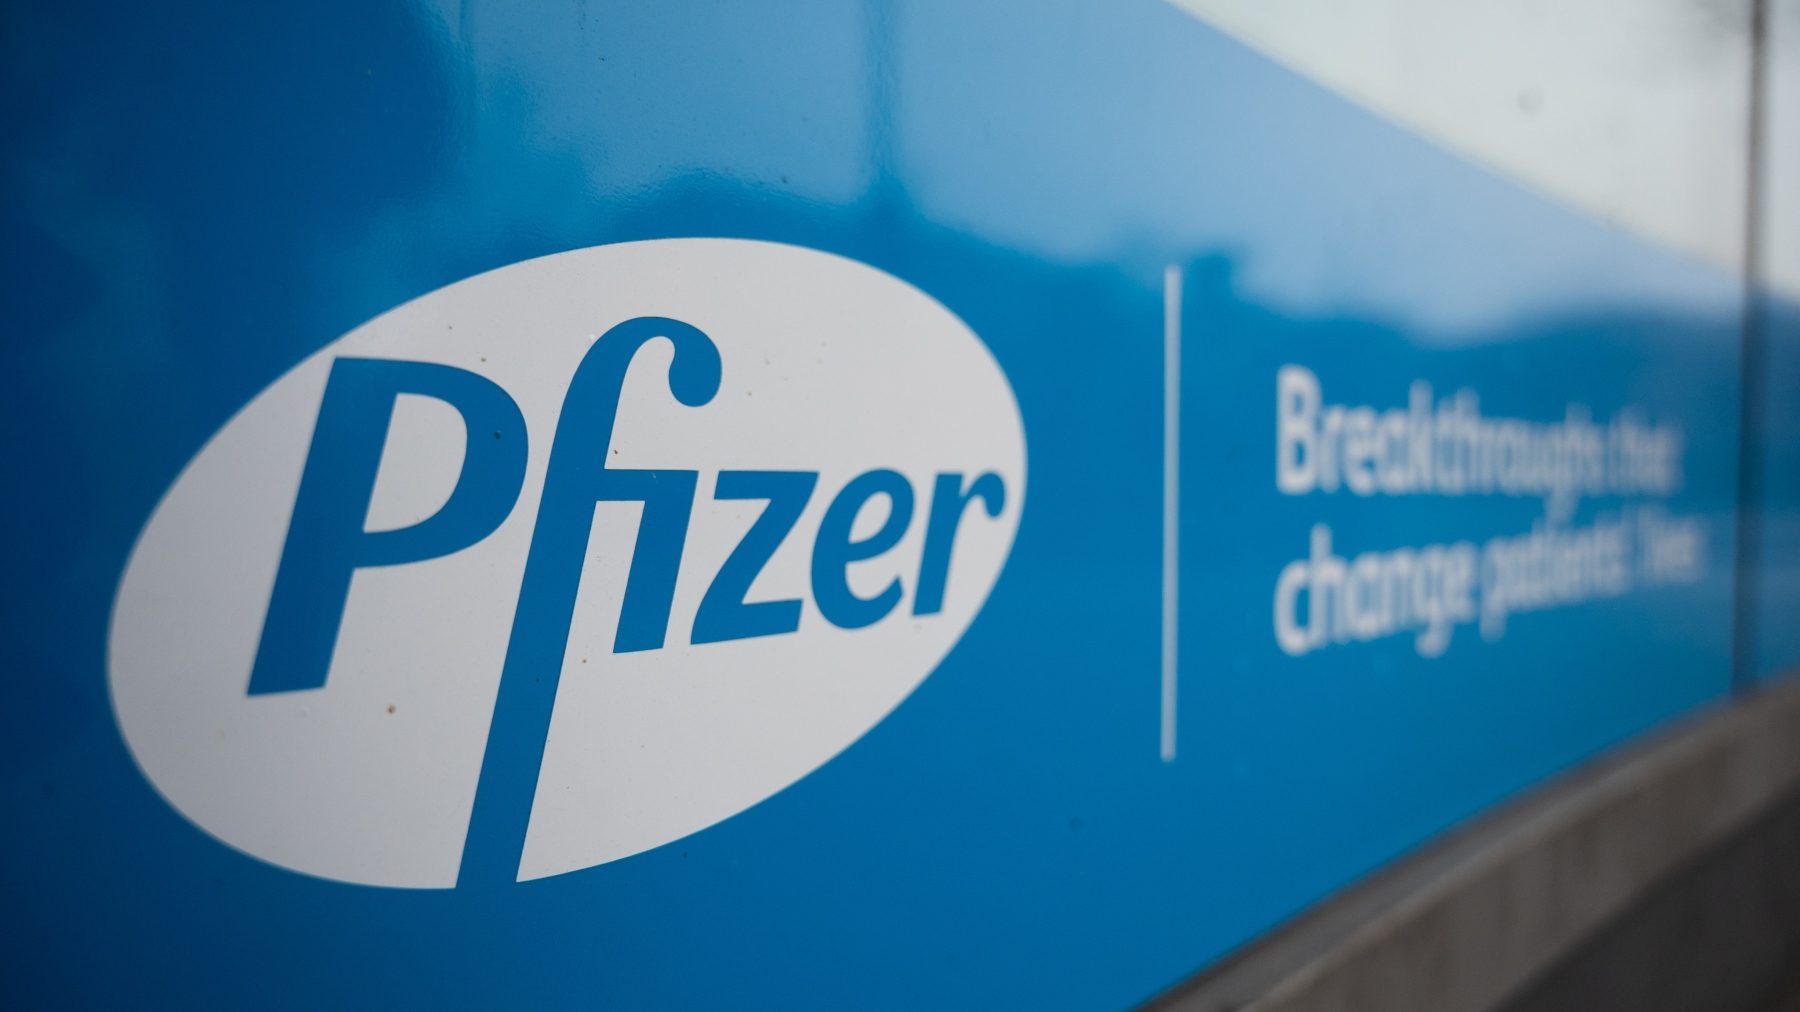 Acuerdo entre Pfizer y la Junta de Andalucía para reforzar el envío a domicilio de medicamentos (CHRISTOPHE GATEAU / DPA).